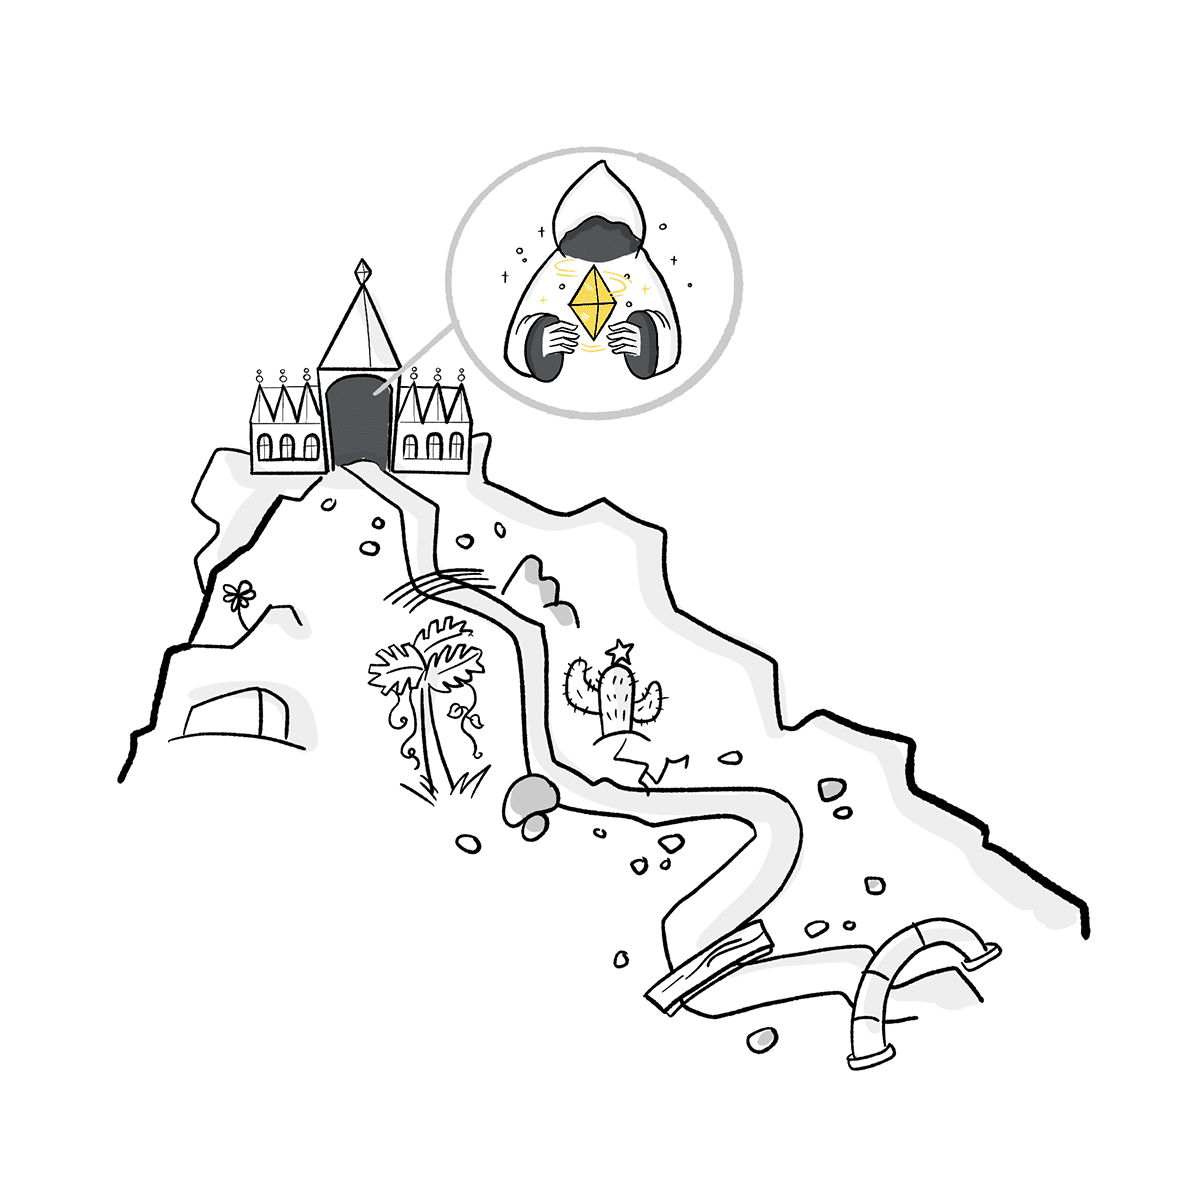 Eine illustration eines Berges mit einem Tempel darauf, in dem eine perosn mit Kapuze sitzt und den gelben stein hält